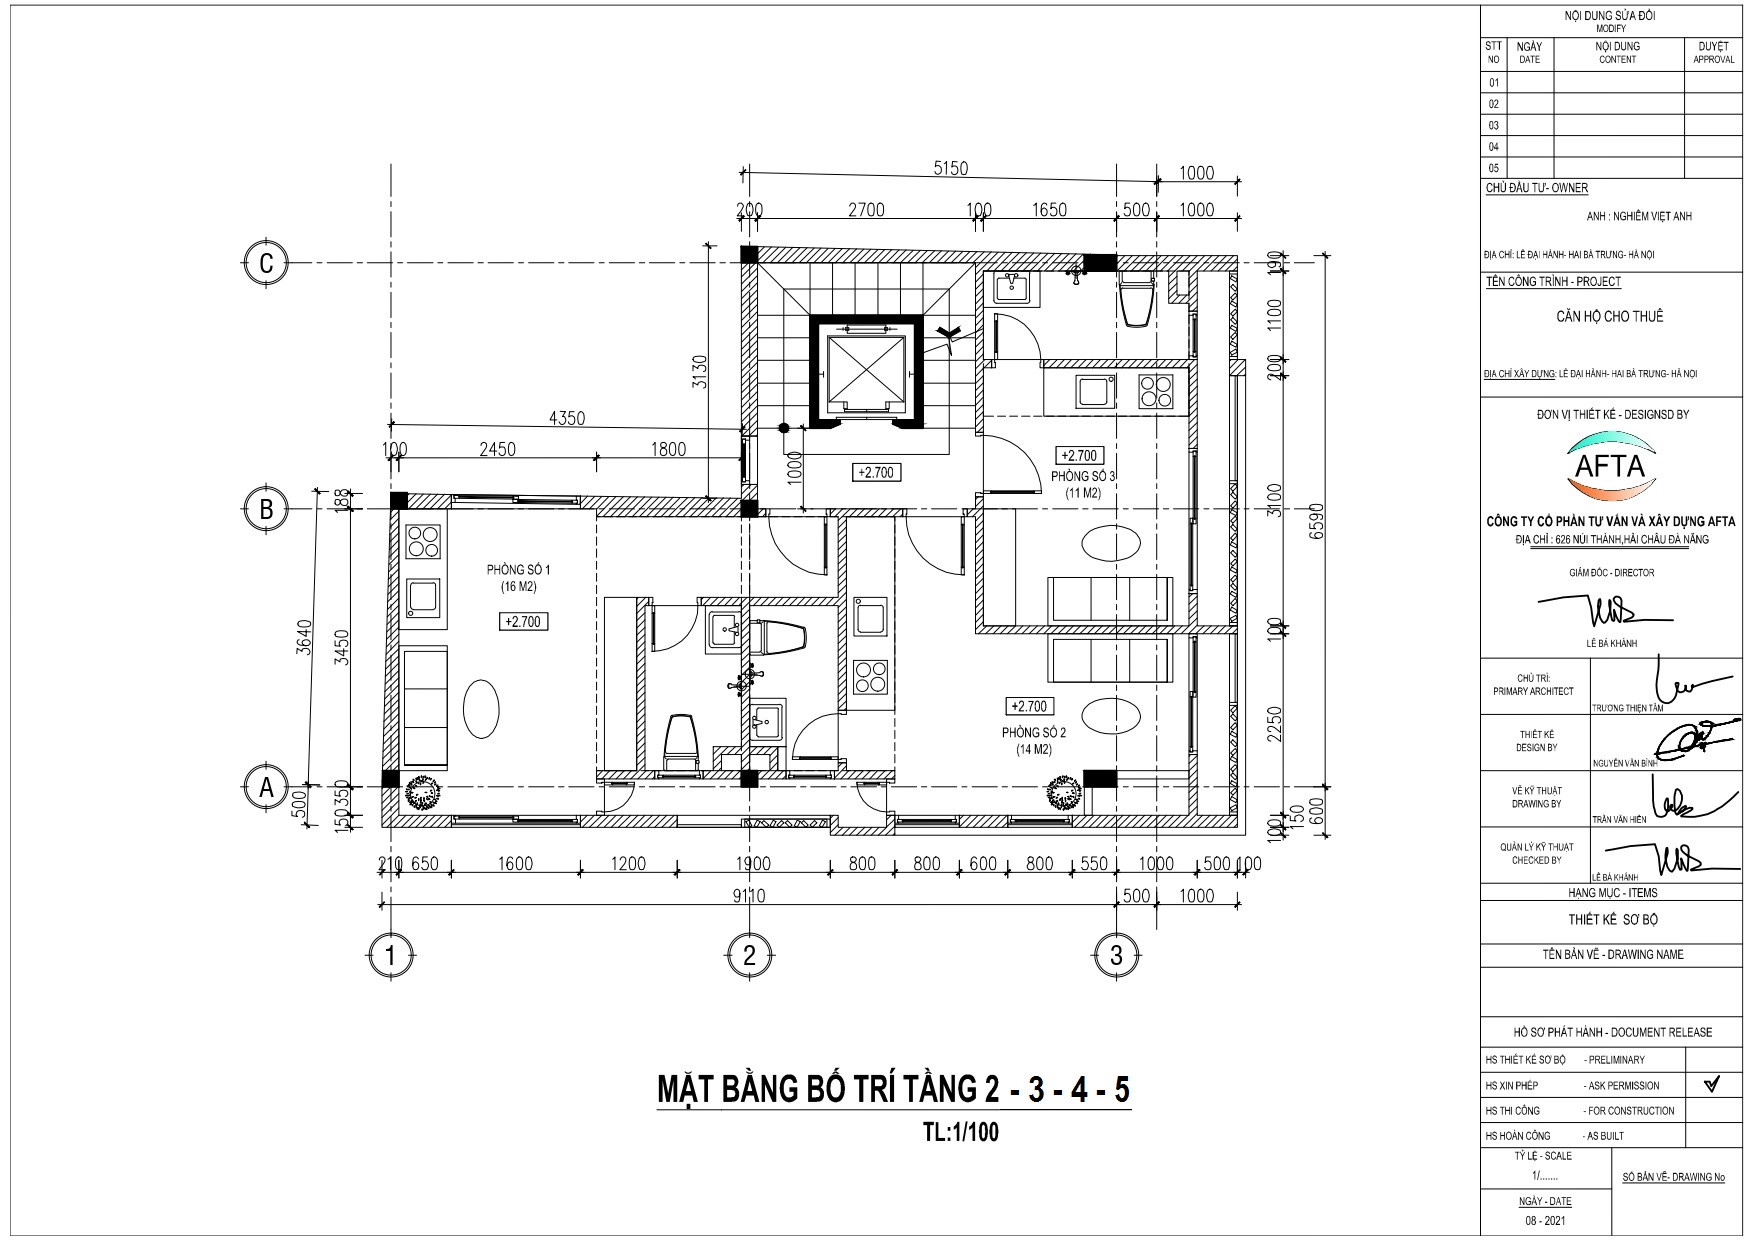 Mặt bằng căn hộ cho thuê 5 tầng | Tầng 2-3-4-5